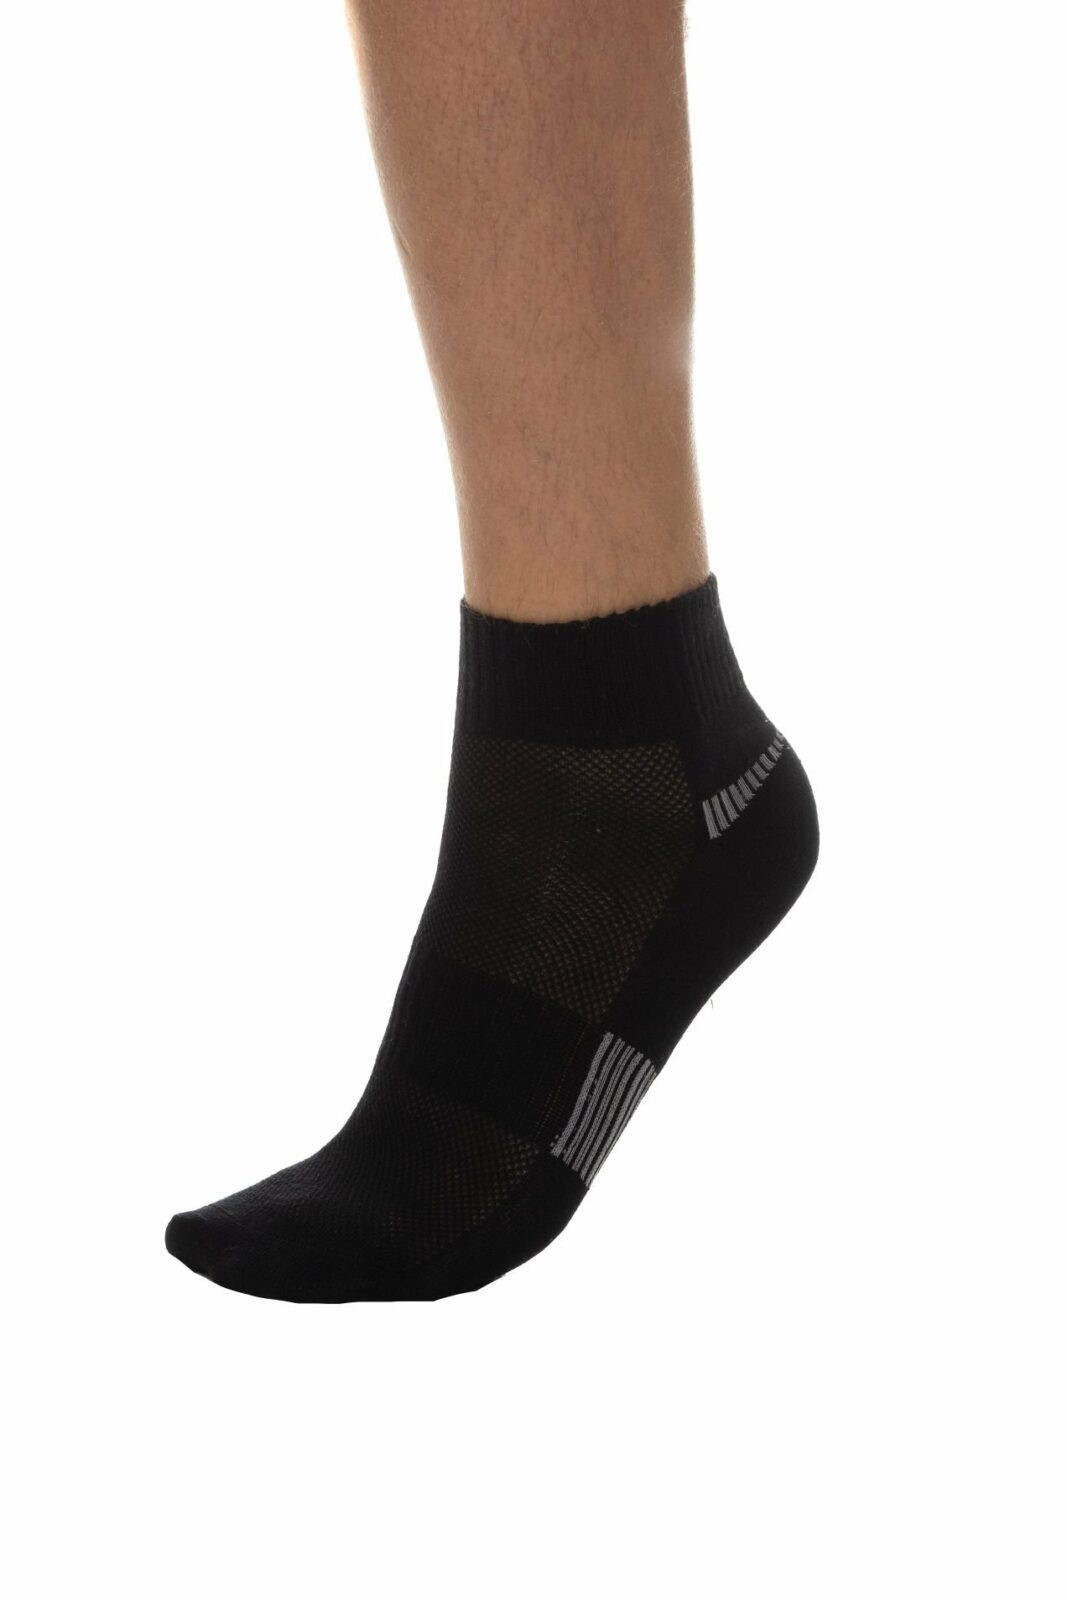 SAM73 Ponožky Denton -